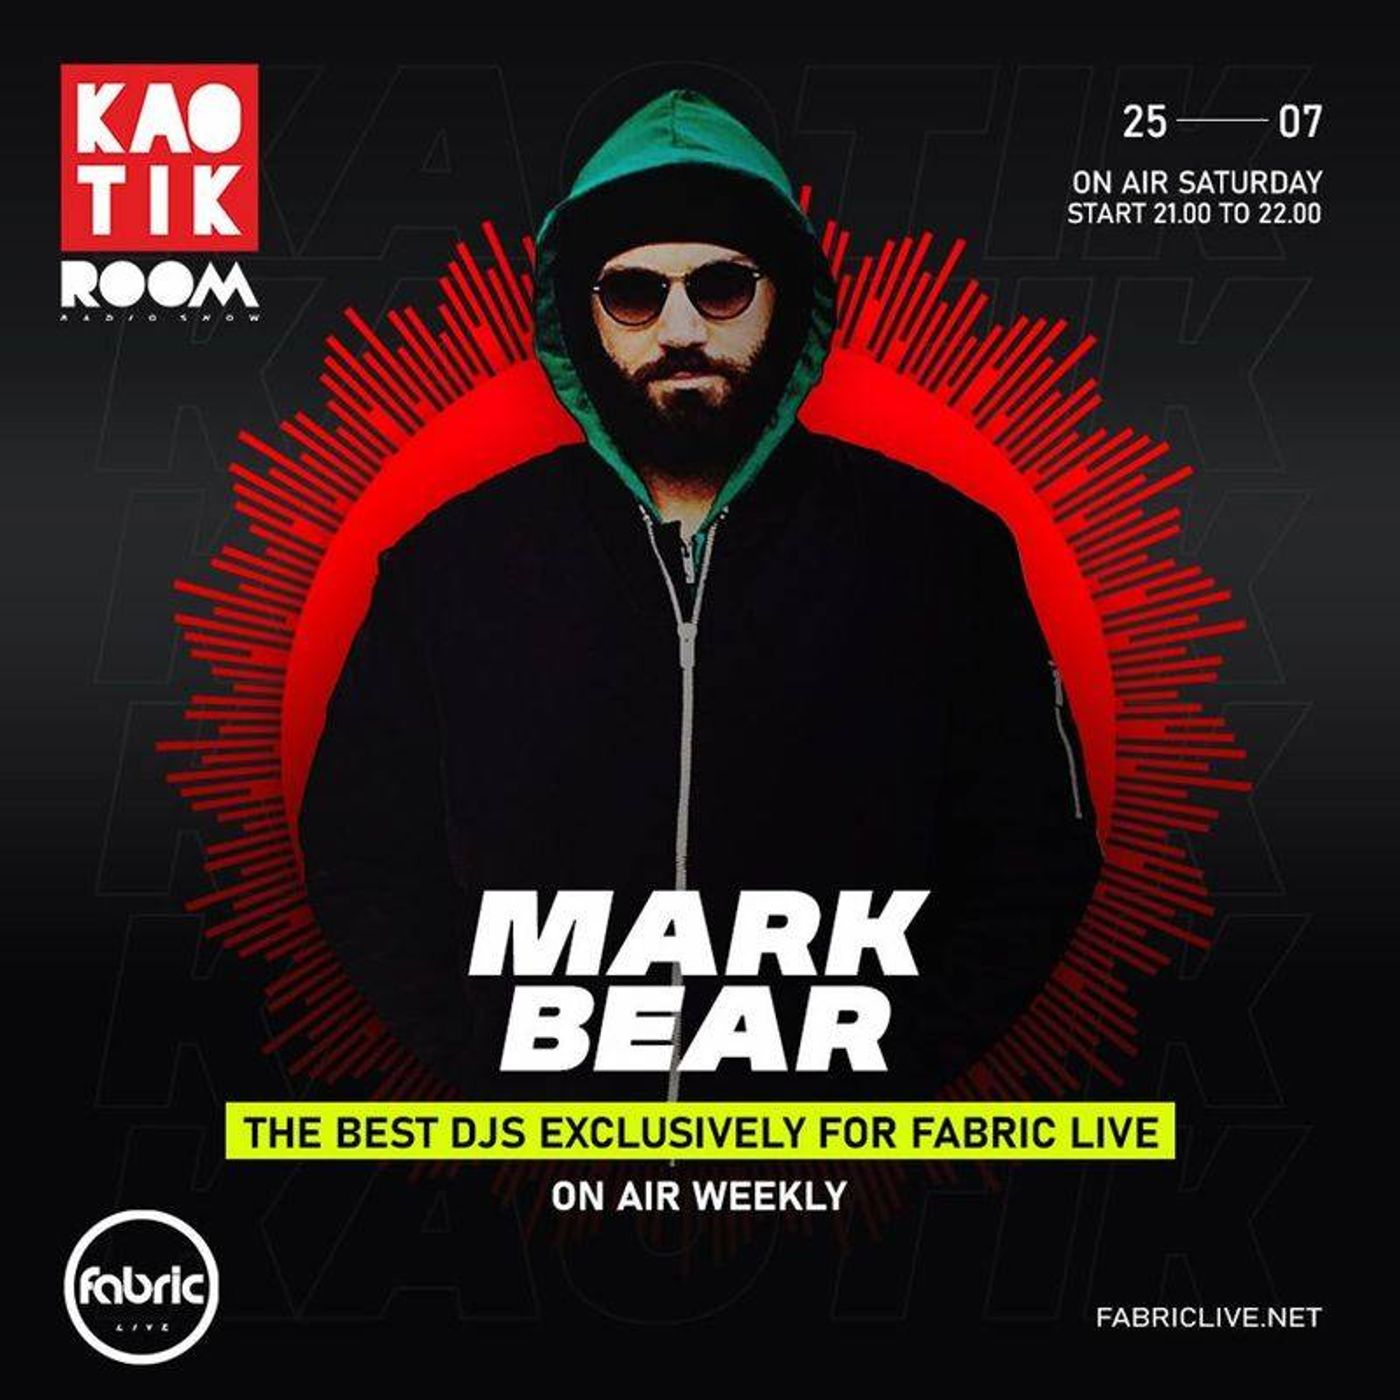 MARK BEAR - KAOTIK ROOM EP. 018